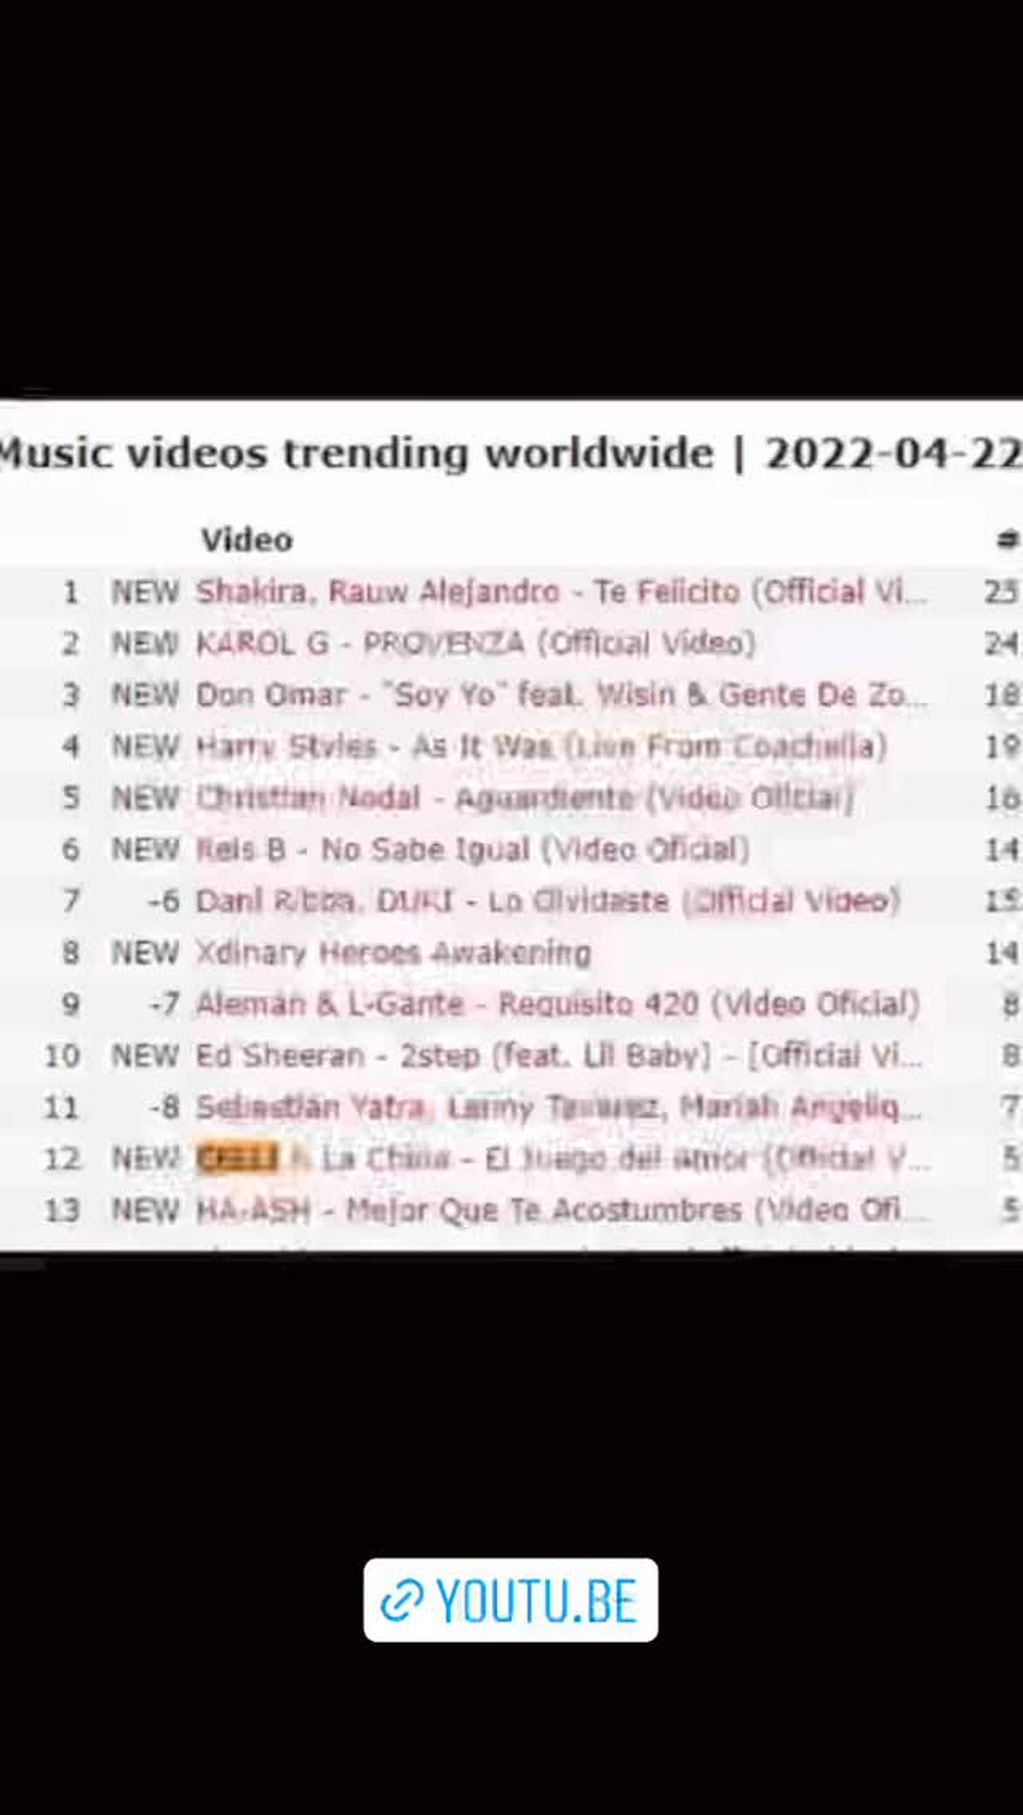 El ranking de canciones más escuchadas en YouTube a nivel mundial.